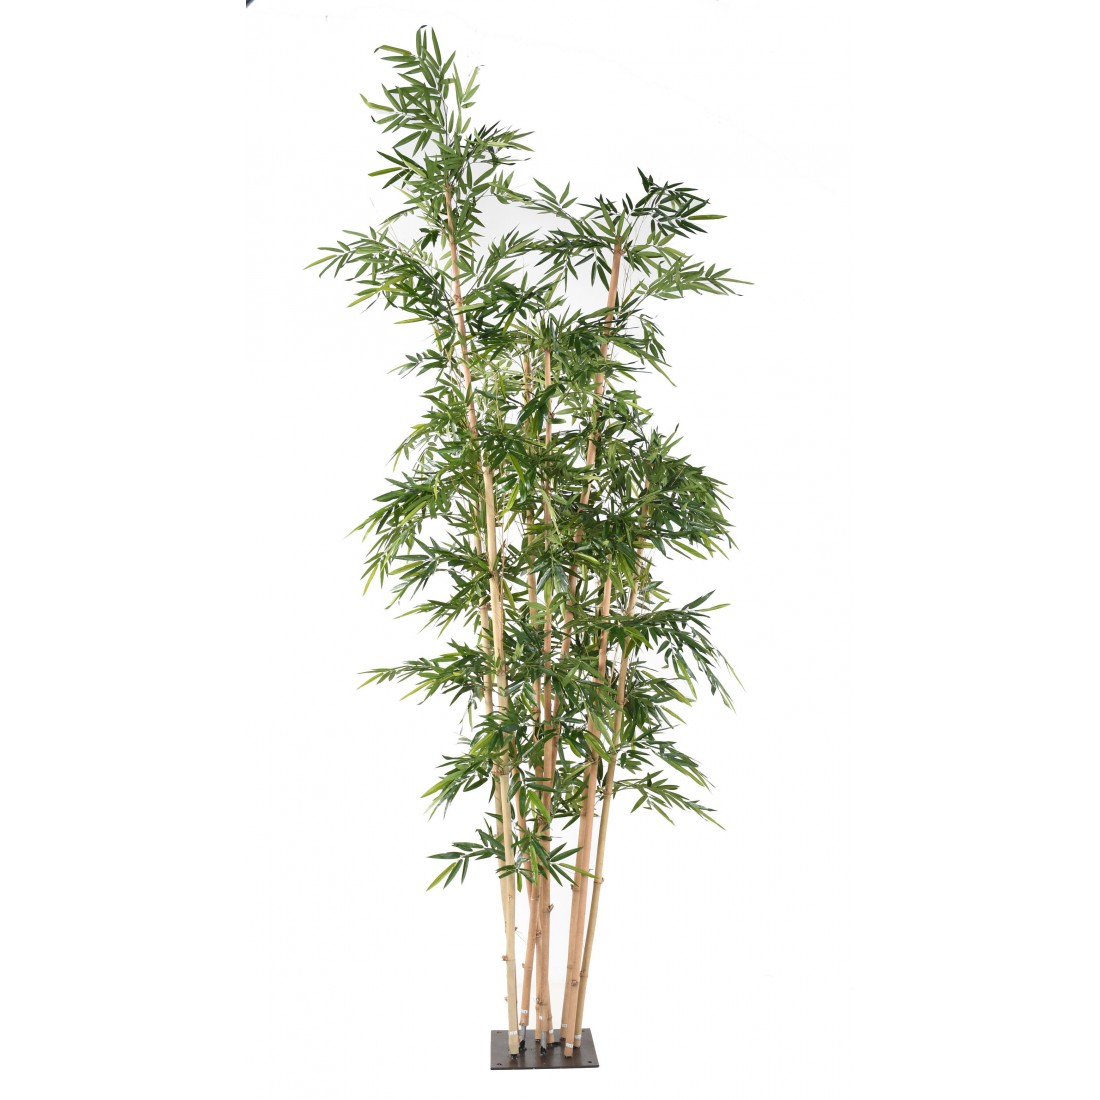 Bamboo cane 100 x 400 cm – Le bambou vert